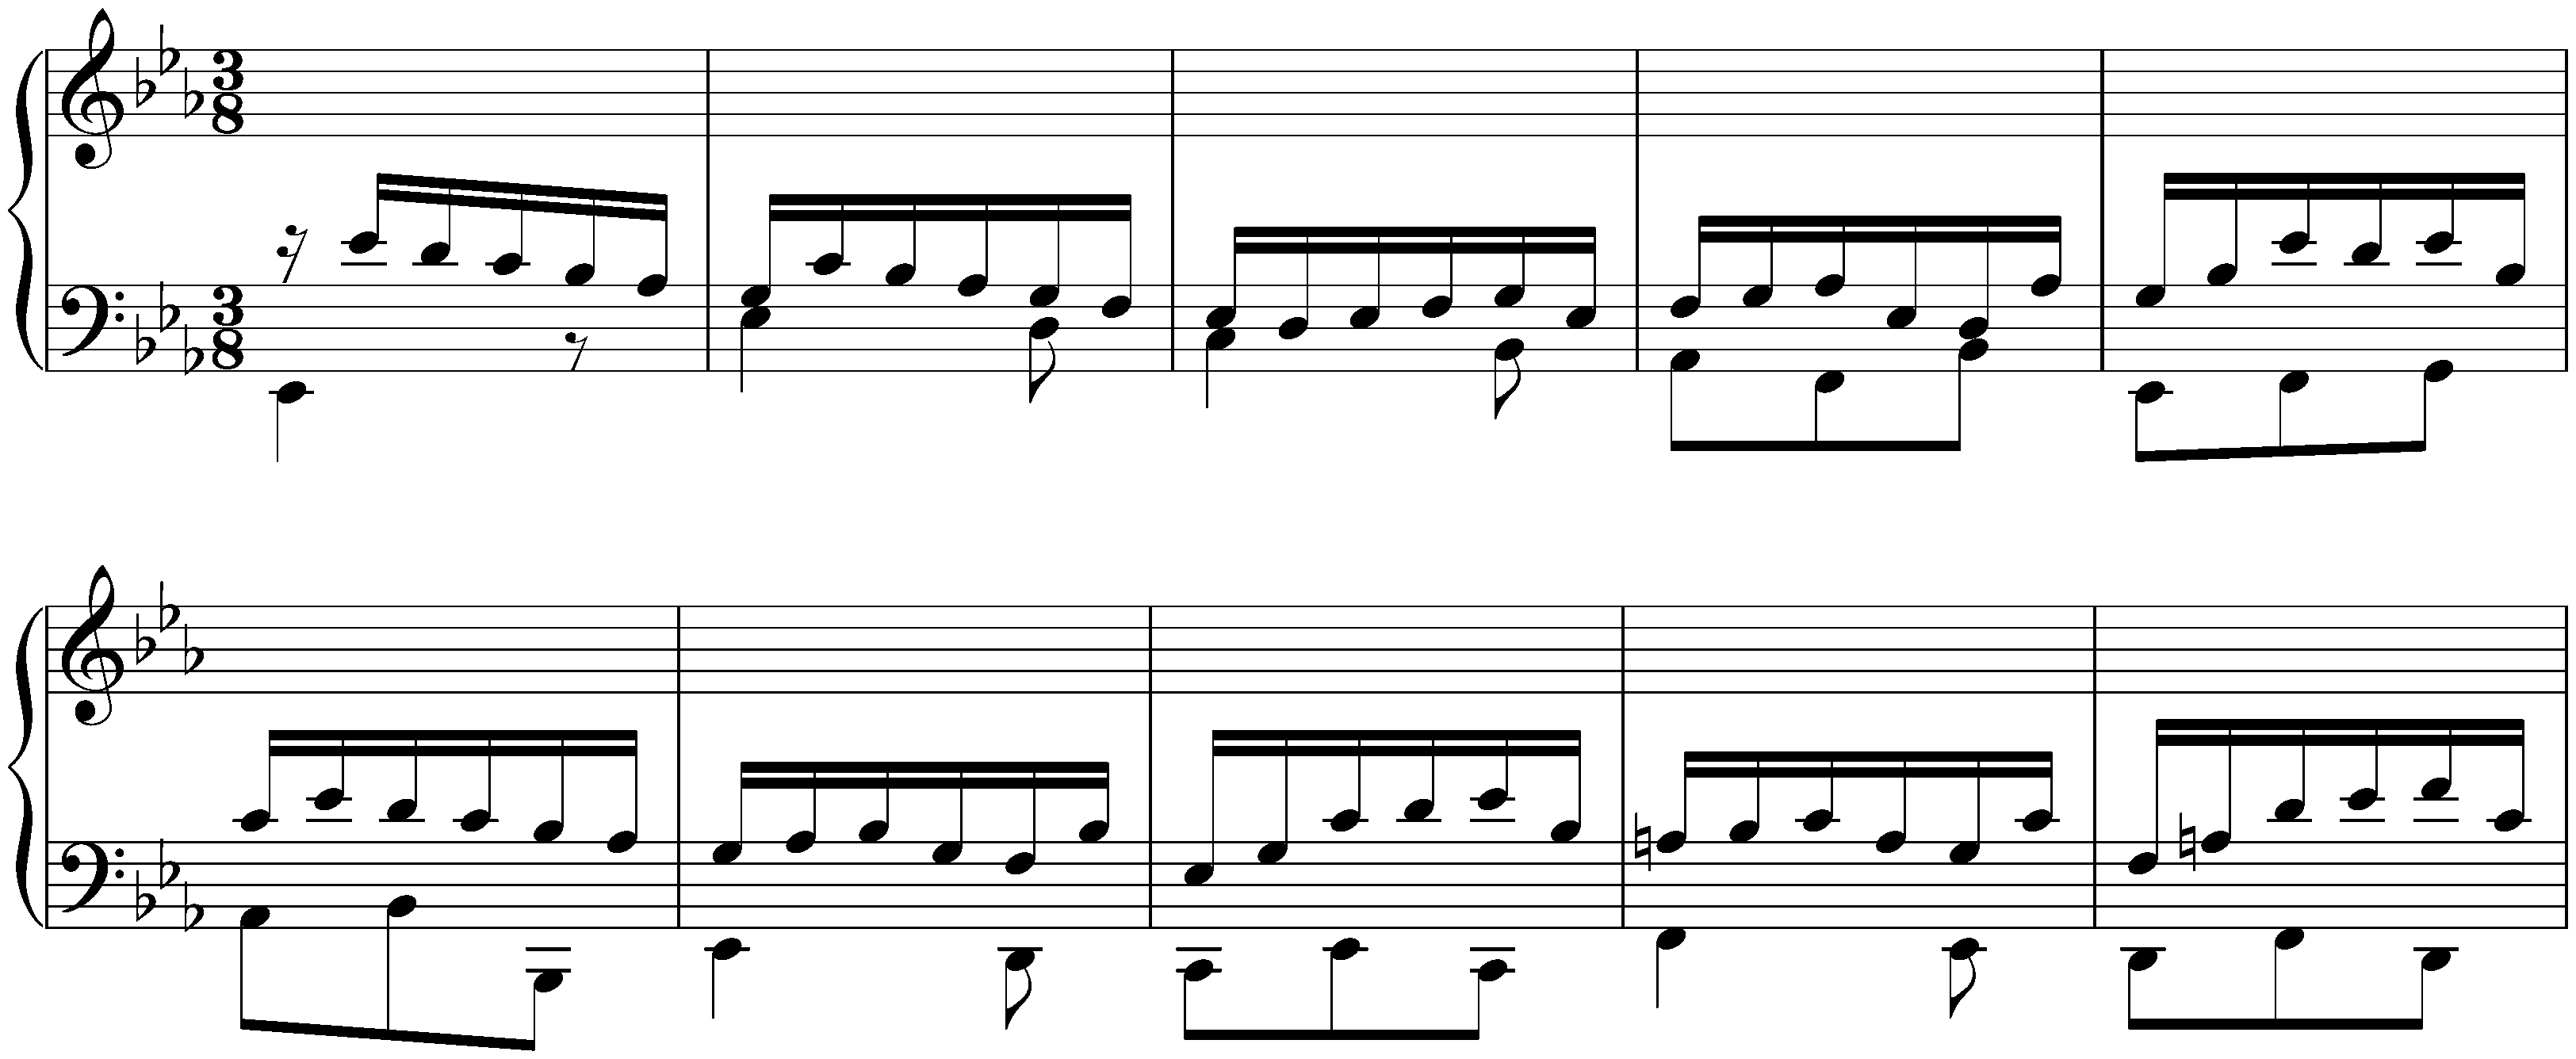 Prelude, Fugue and Allegro in E-flat major, BWV 998; 3. Allegro